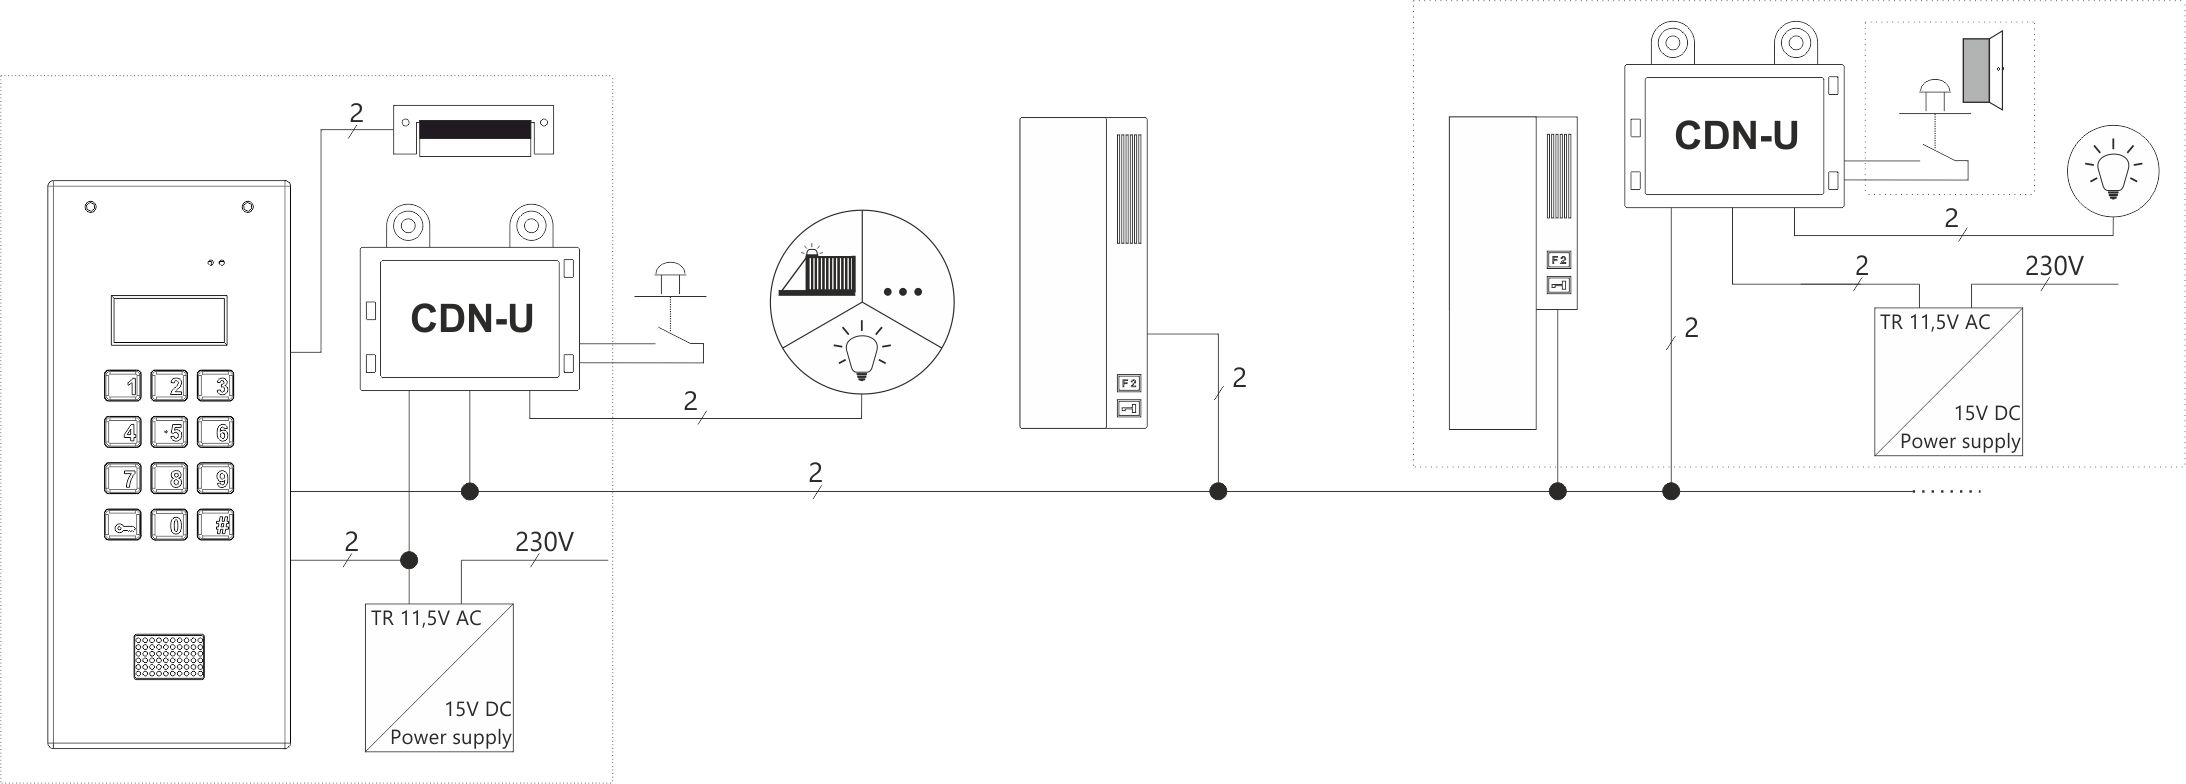 CDN-U Modul der zusätzlichen Klingelsignalisierung mit der Möglichkeit, die Tür zu öffnen - Diagramm